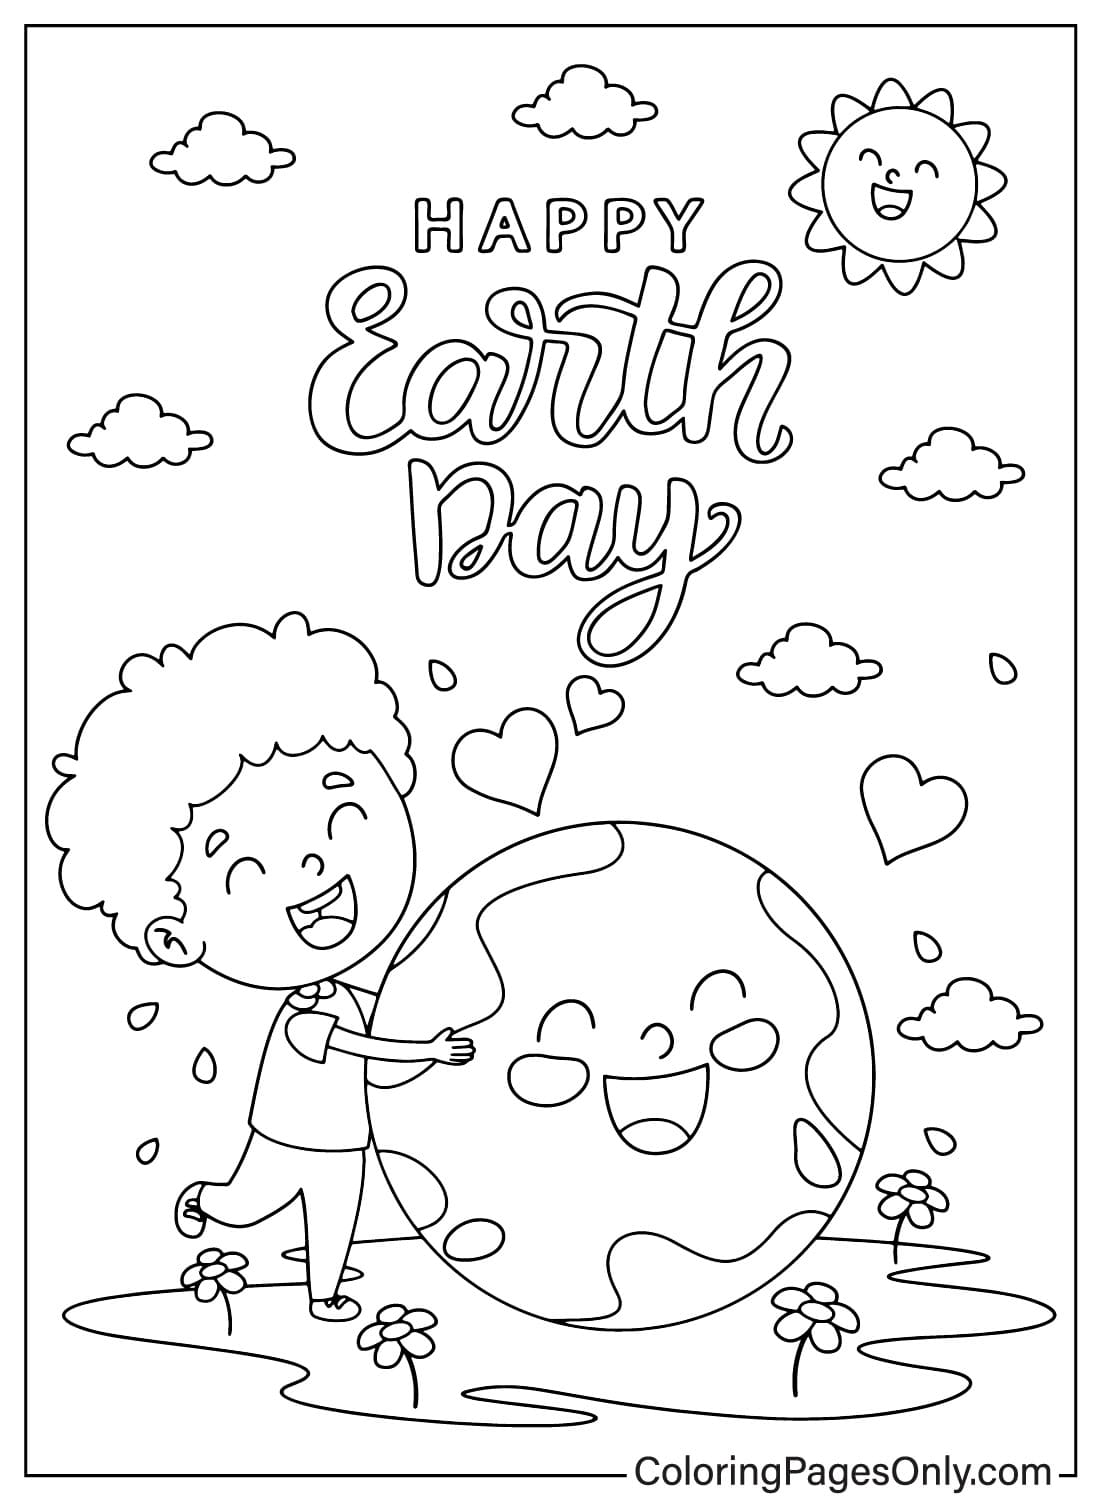 صفحة تلوين يوم الأرض لشهر أبريل من يوم الأرض